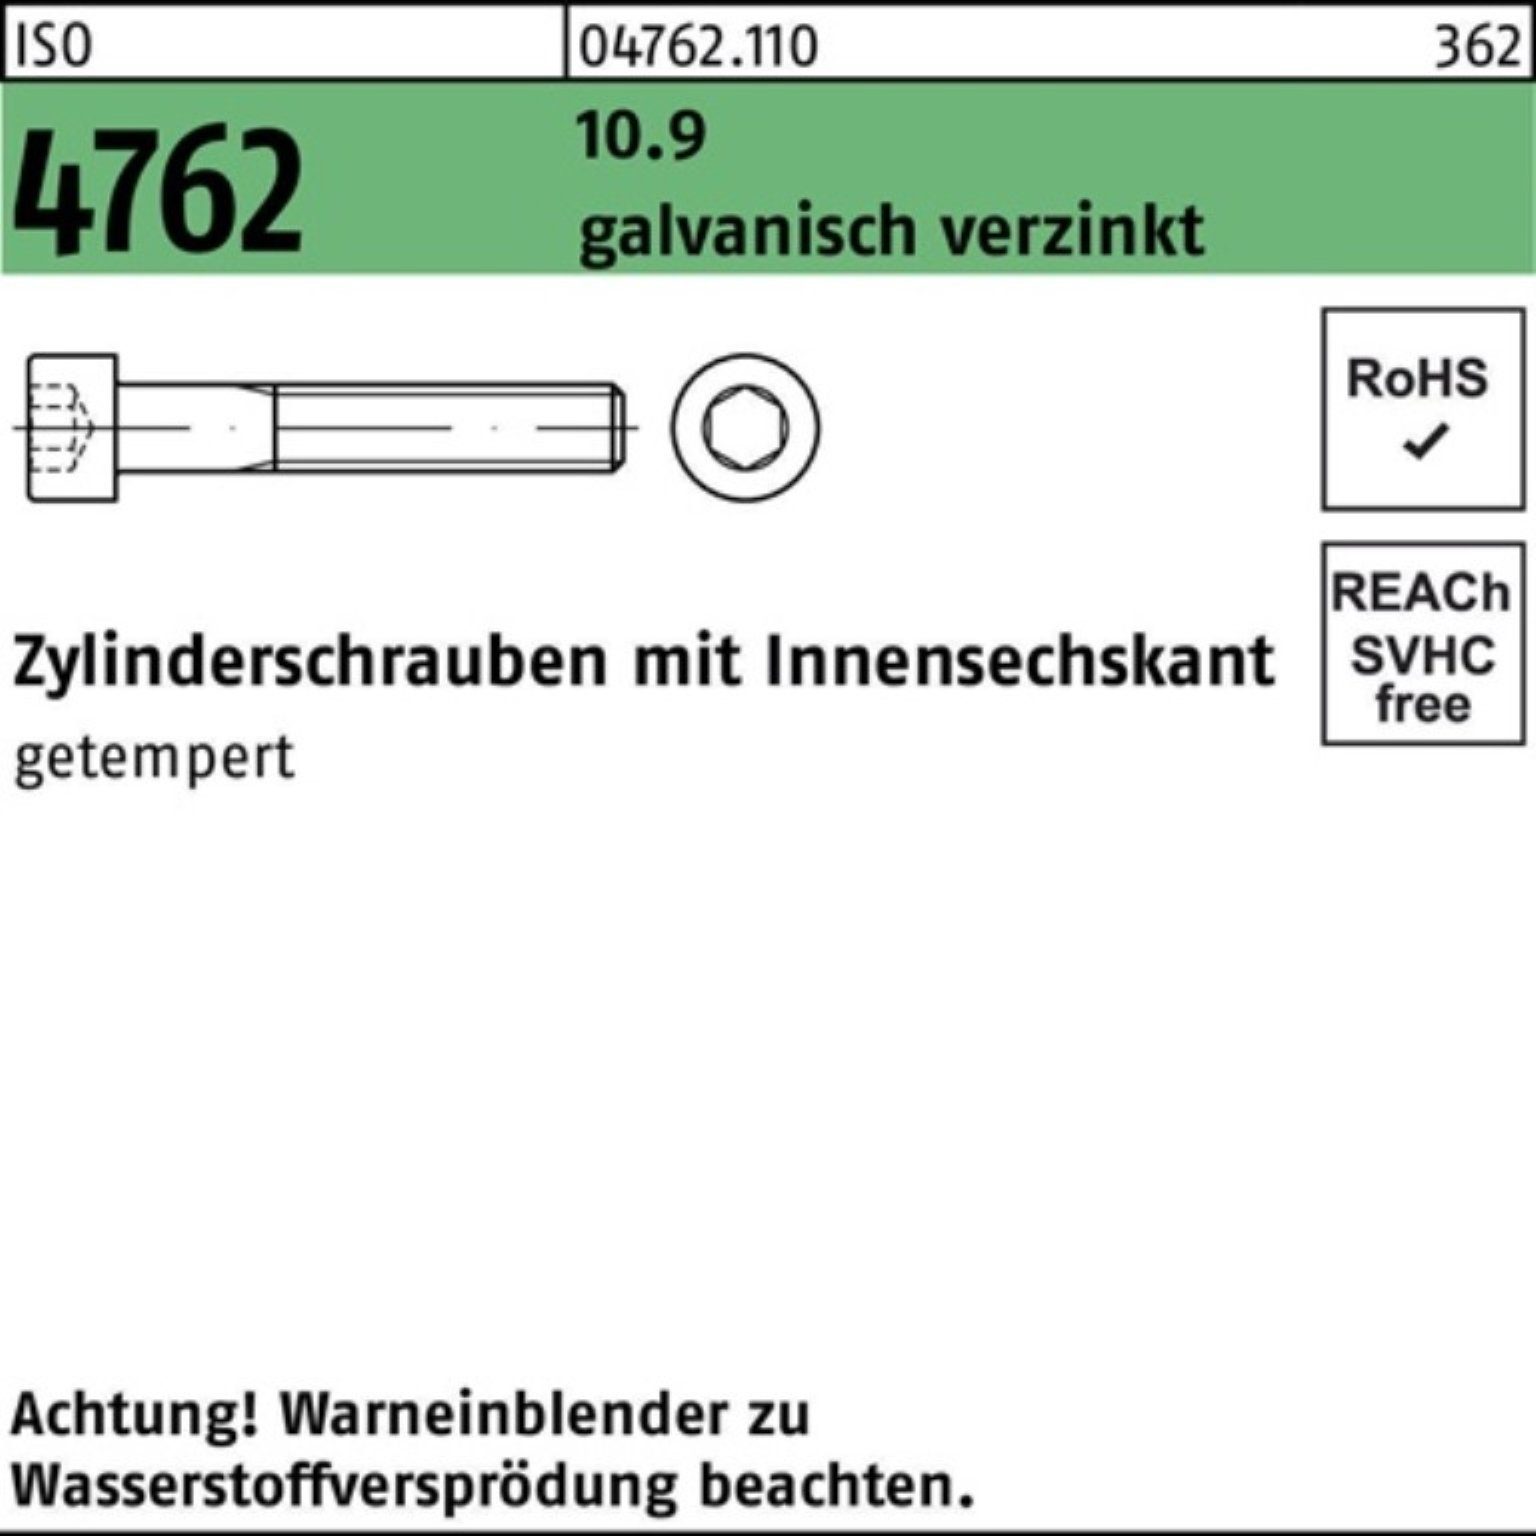 Zylinderschraube Innen-6kt ISO galv.verz. Pack 4762 Zylinderschraube Reyher M18x80 100er 10.9